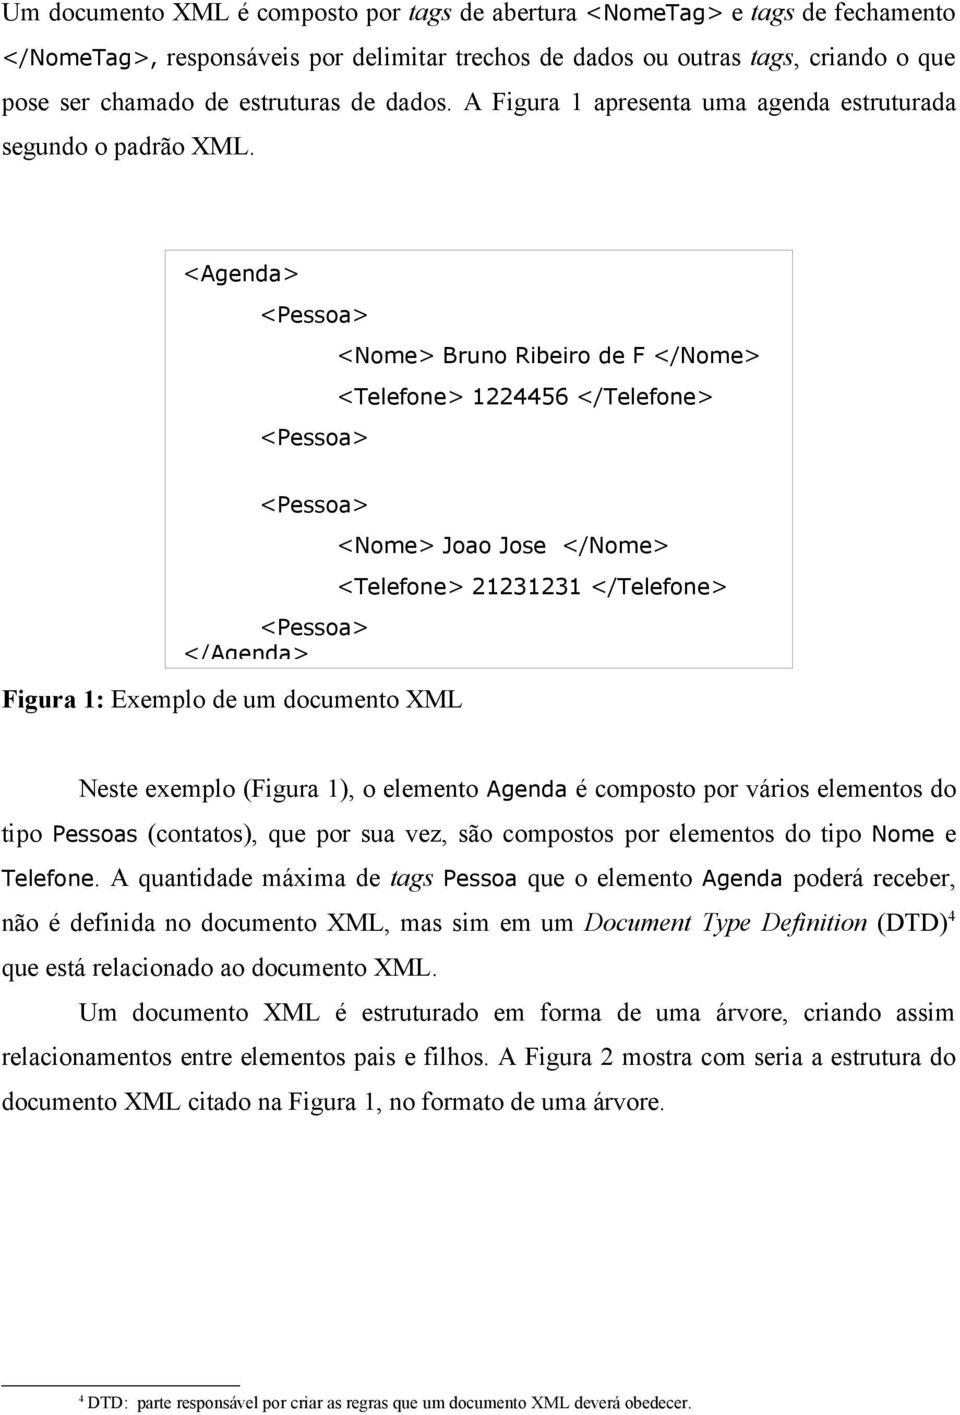 <Agenda> <Pessoa> <Nome> Bruno Ribeiro de F </Nome> <Telefone> 1224456 </Telefone> <Pessoa> <Pessoa> <Pessoa> </Agenda> Figura 1: Exemplo de um documento XML <Nome> Joao Jose </Nome> <Telefone>